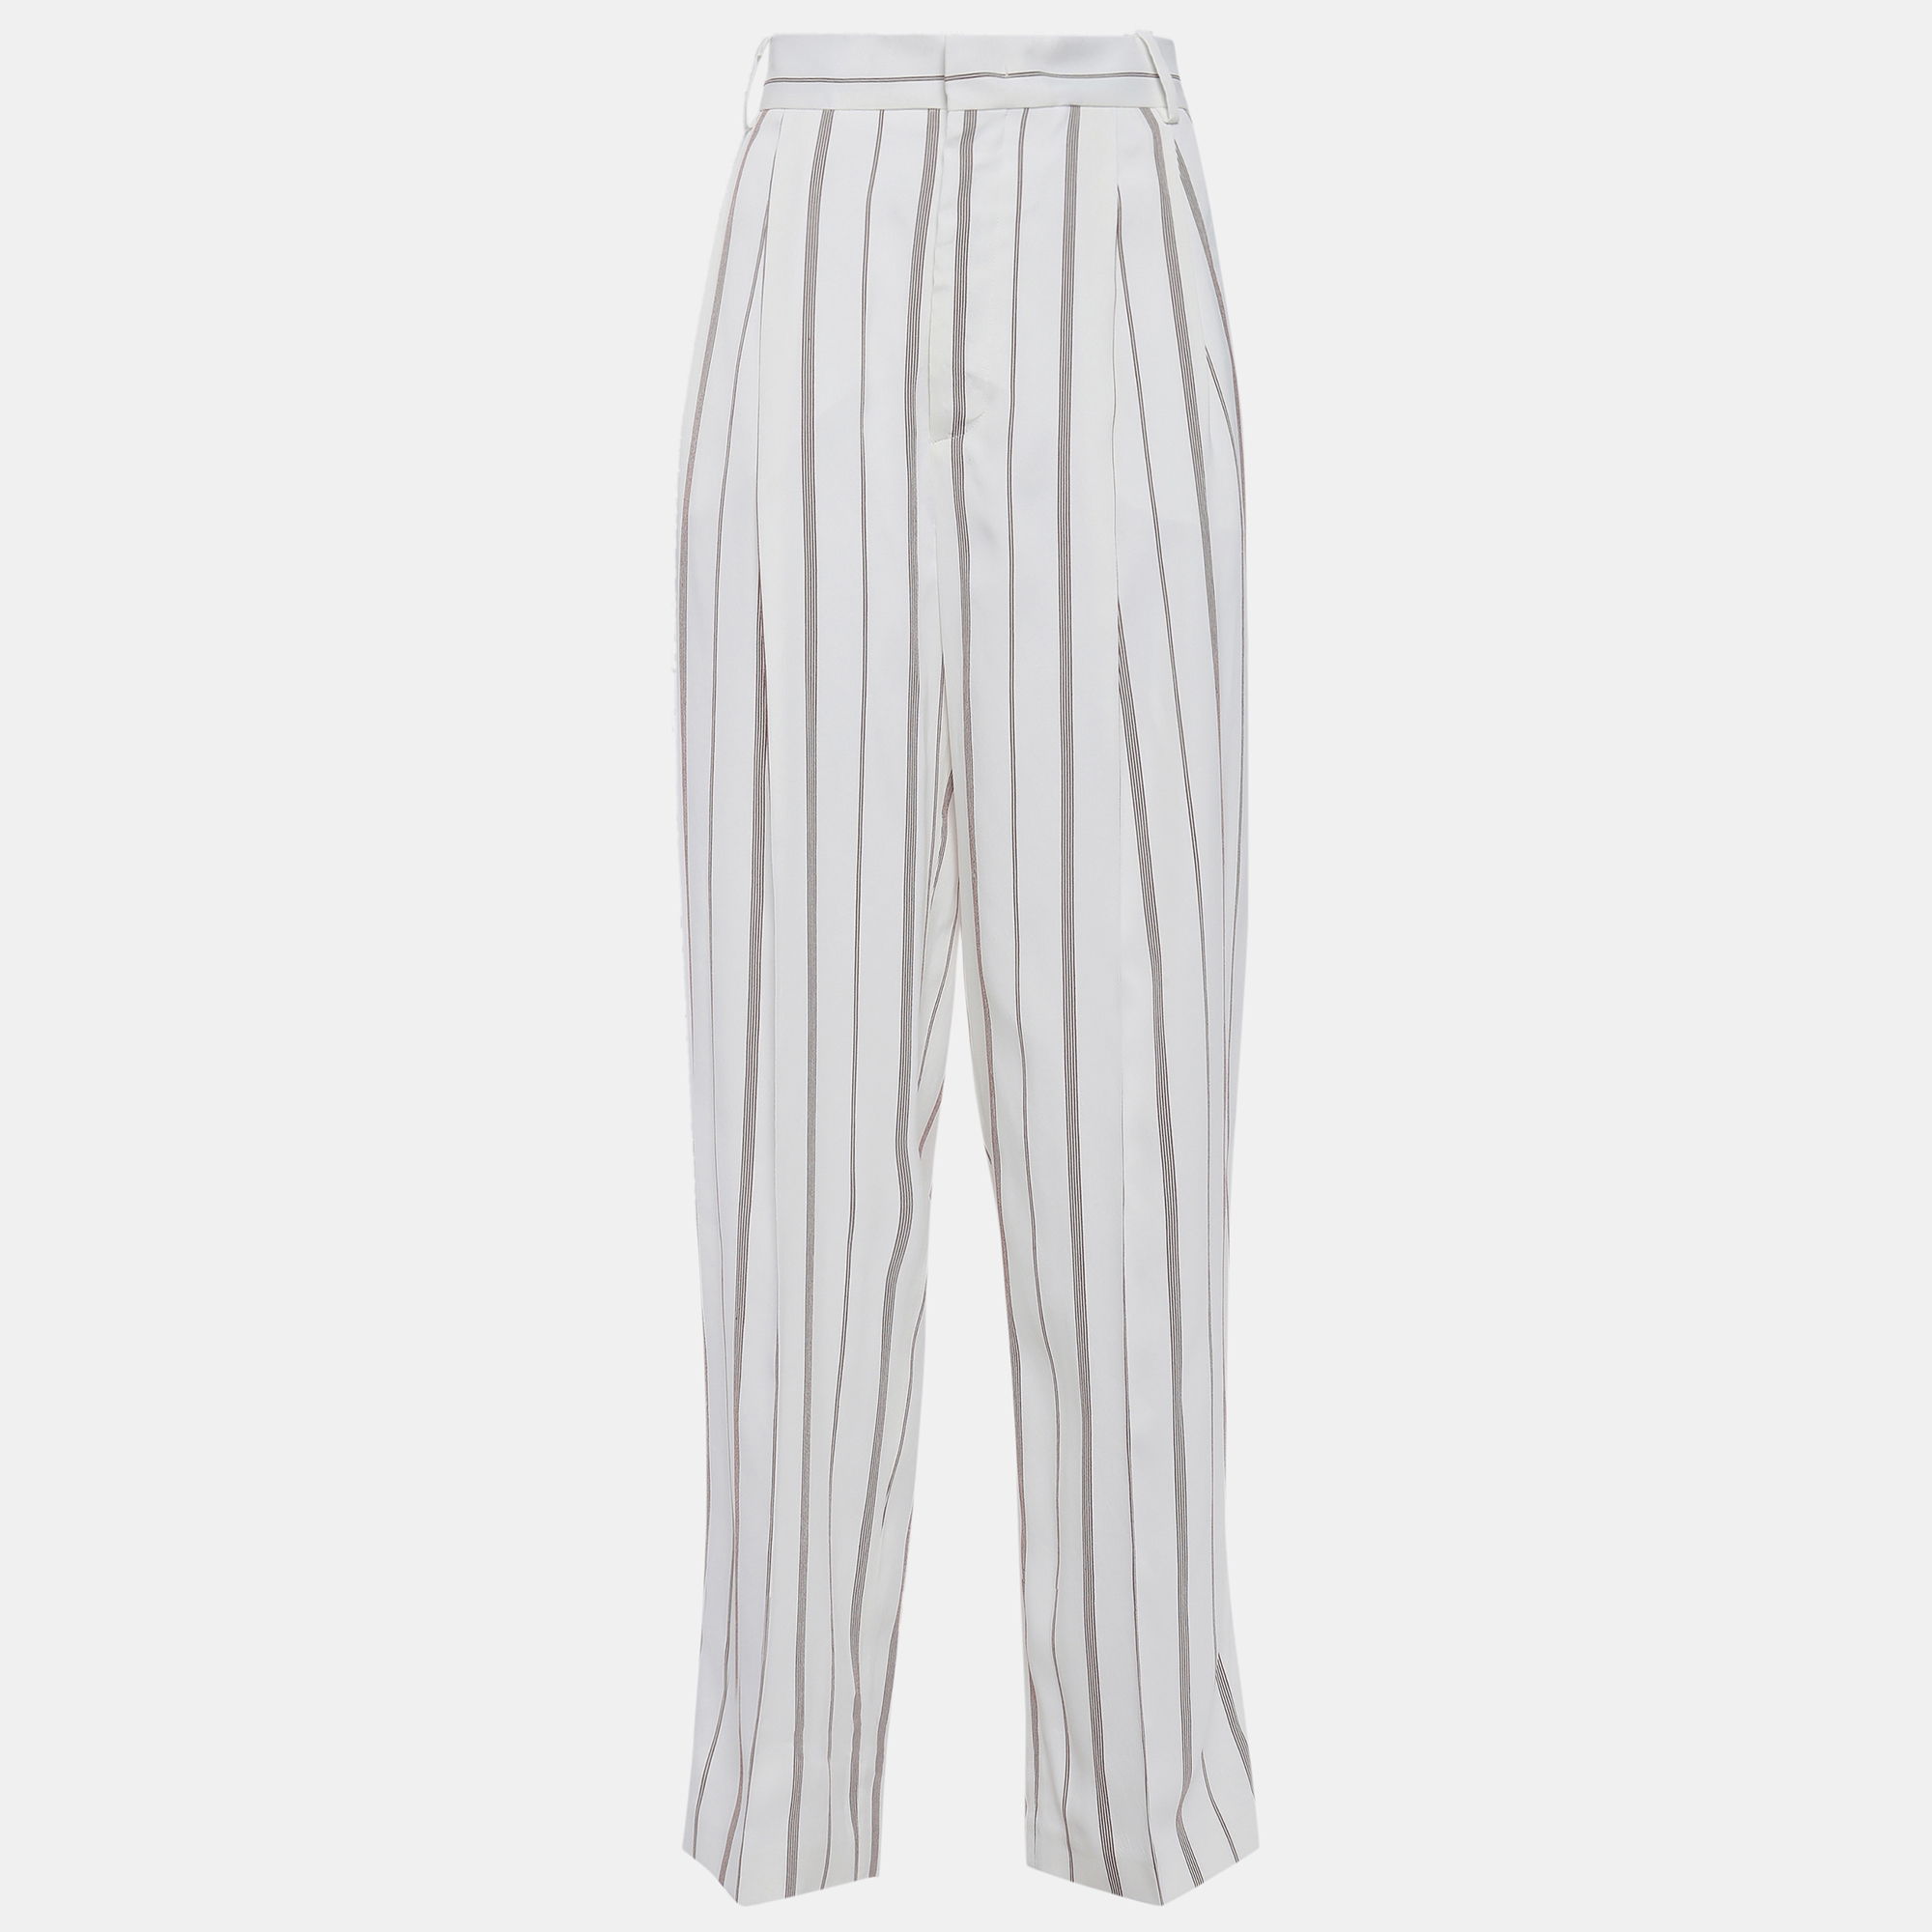 Joseph white striped cotton blend wide leg pants s (fr 34)